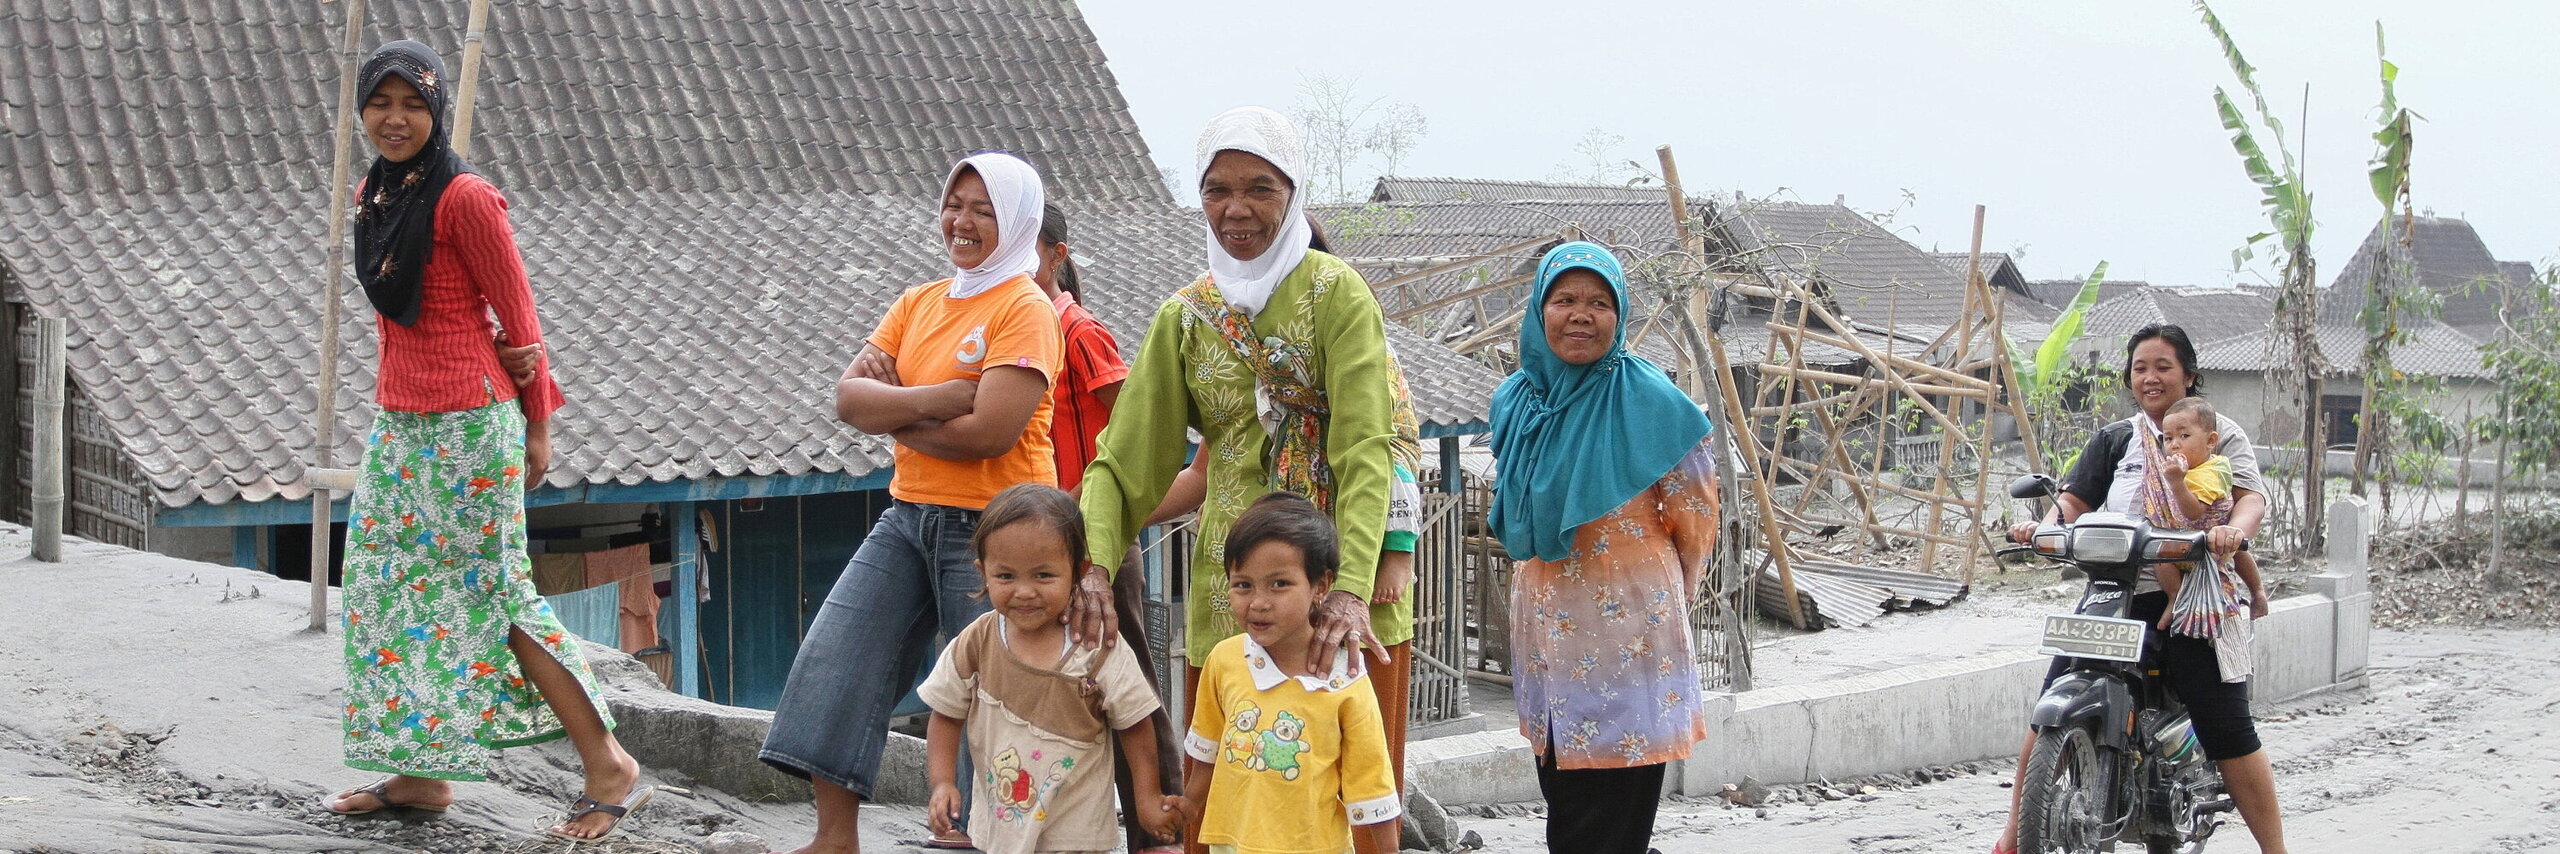 Frauen und Kinder auf einer Straße in Indonesien